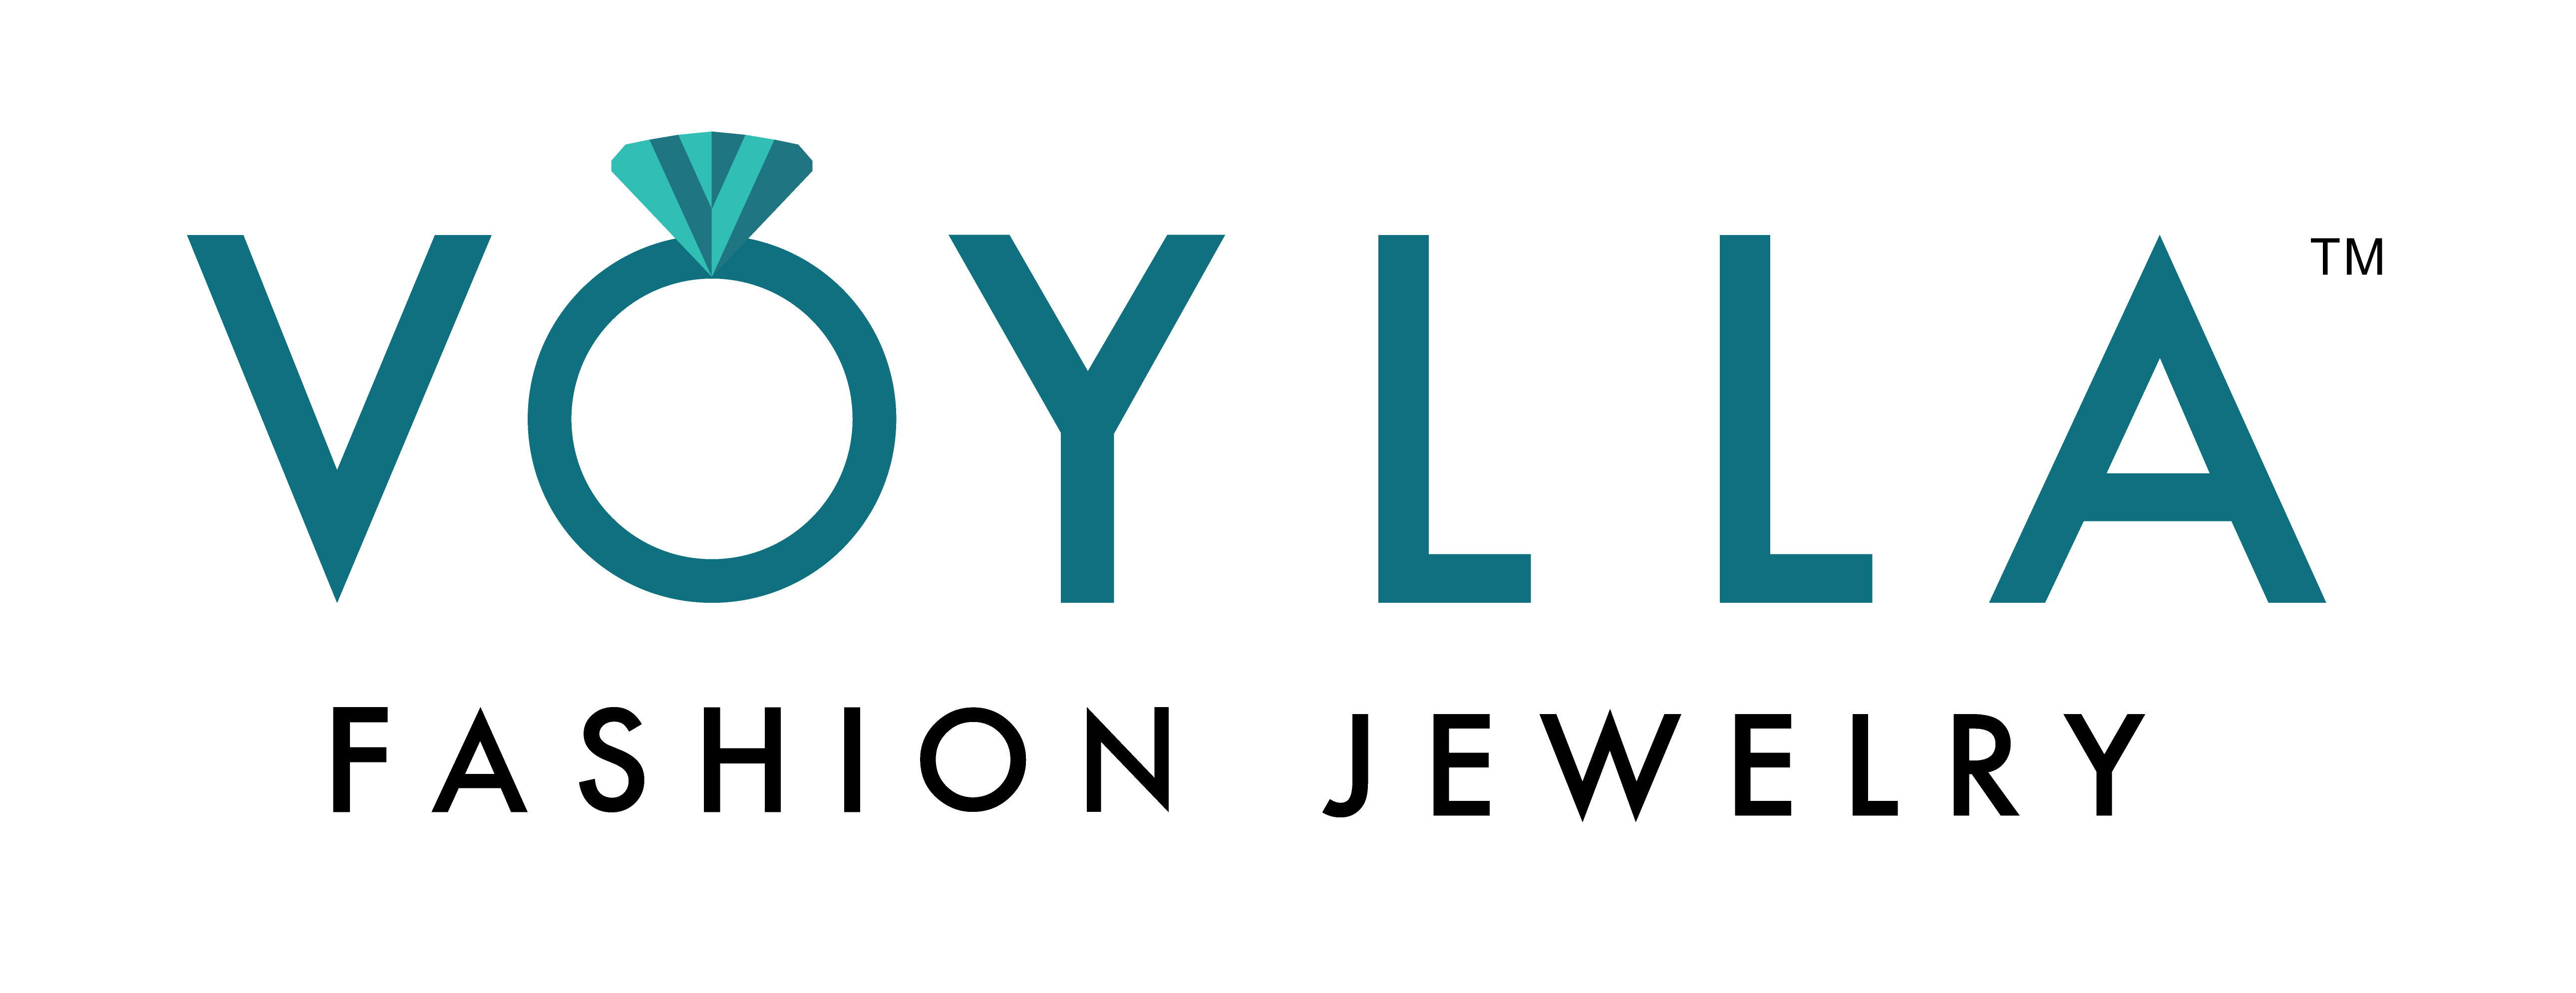 Company Logo For Voylla Fashions Private Limited'